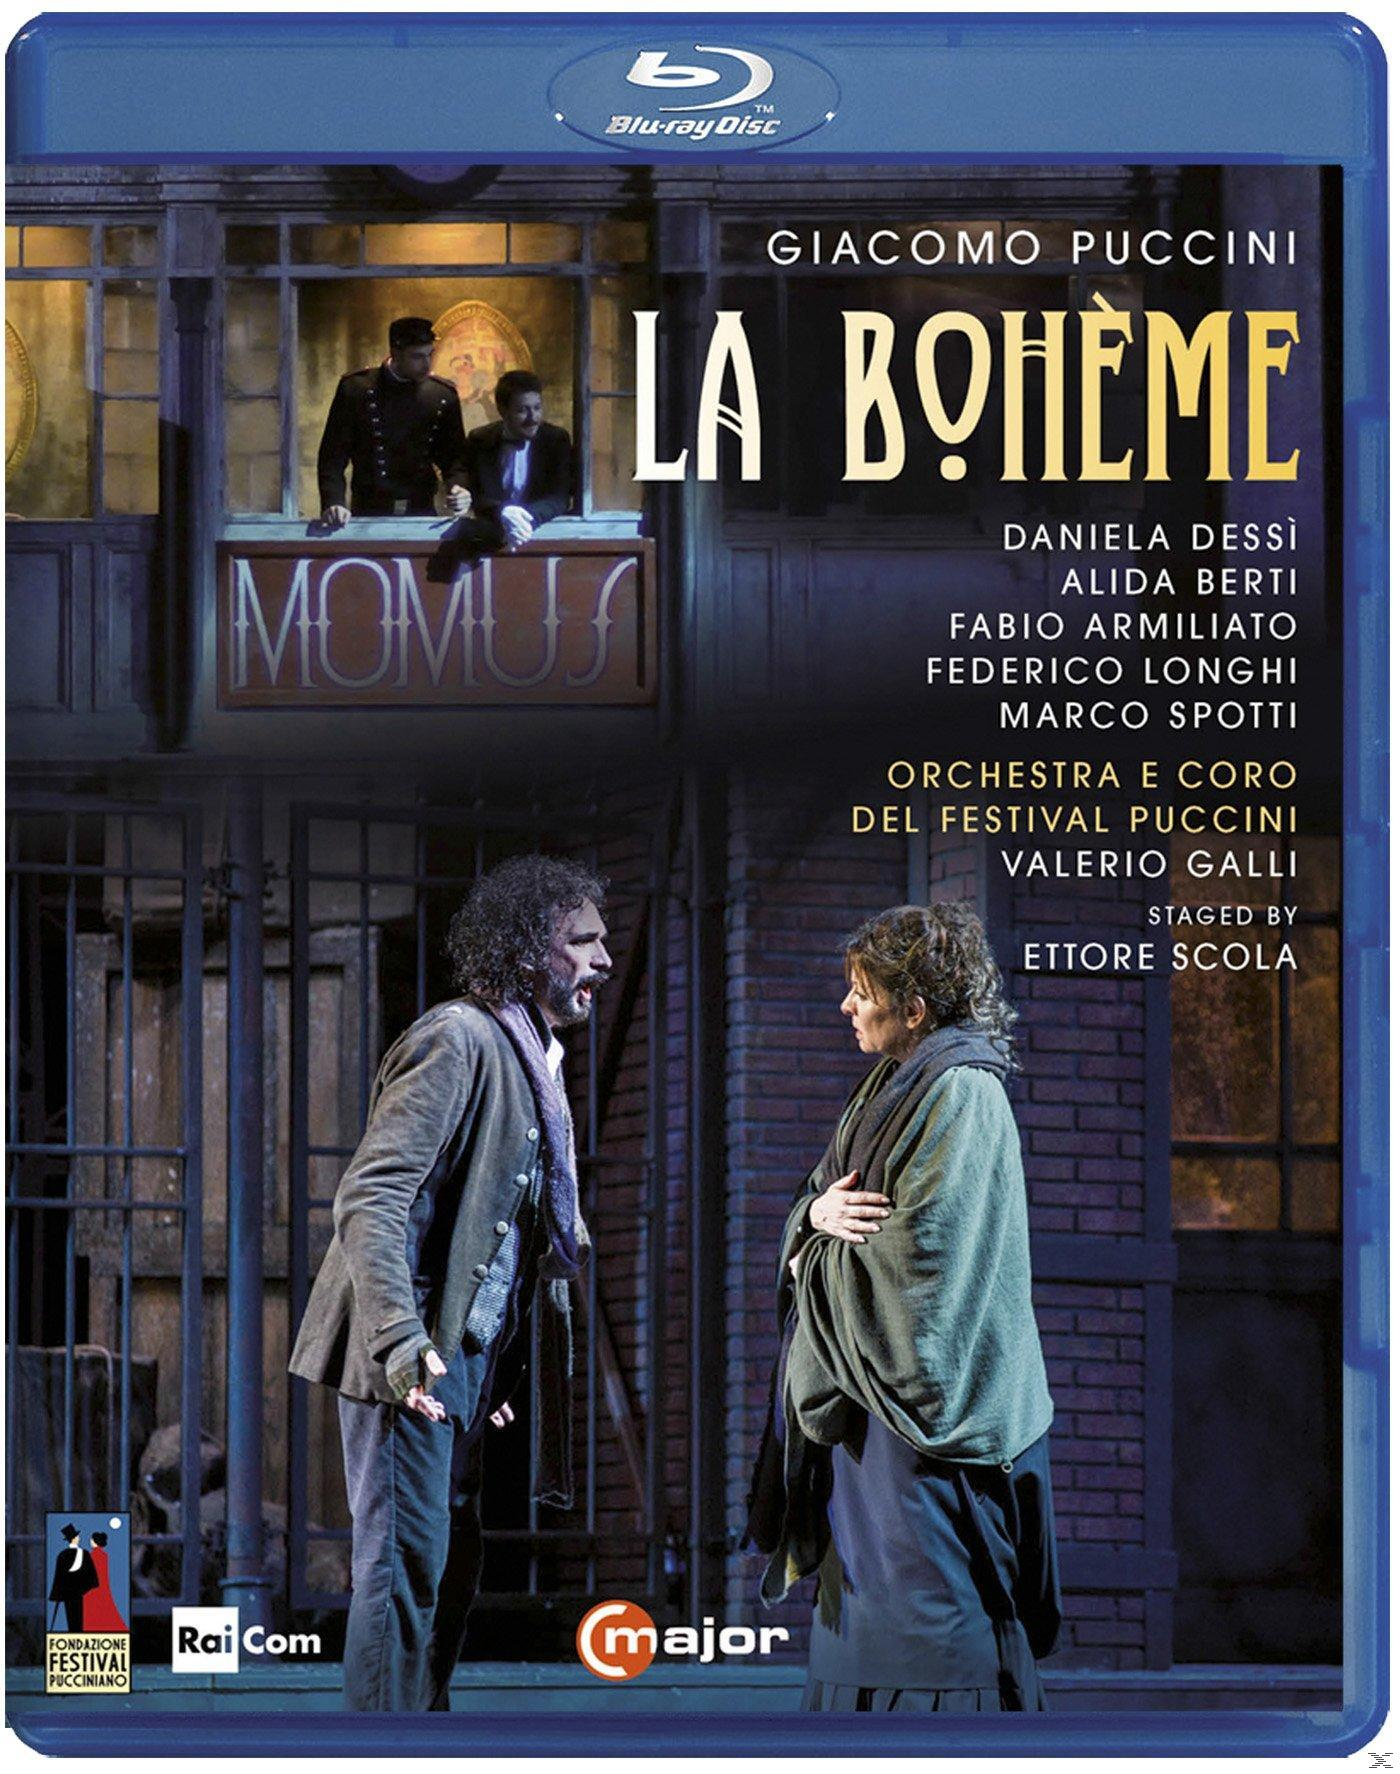 VARIOUS, Orchestra Del Festival Puccini - (Blu-ray) - Boheme La